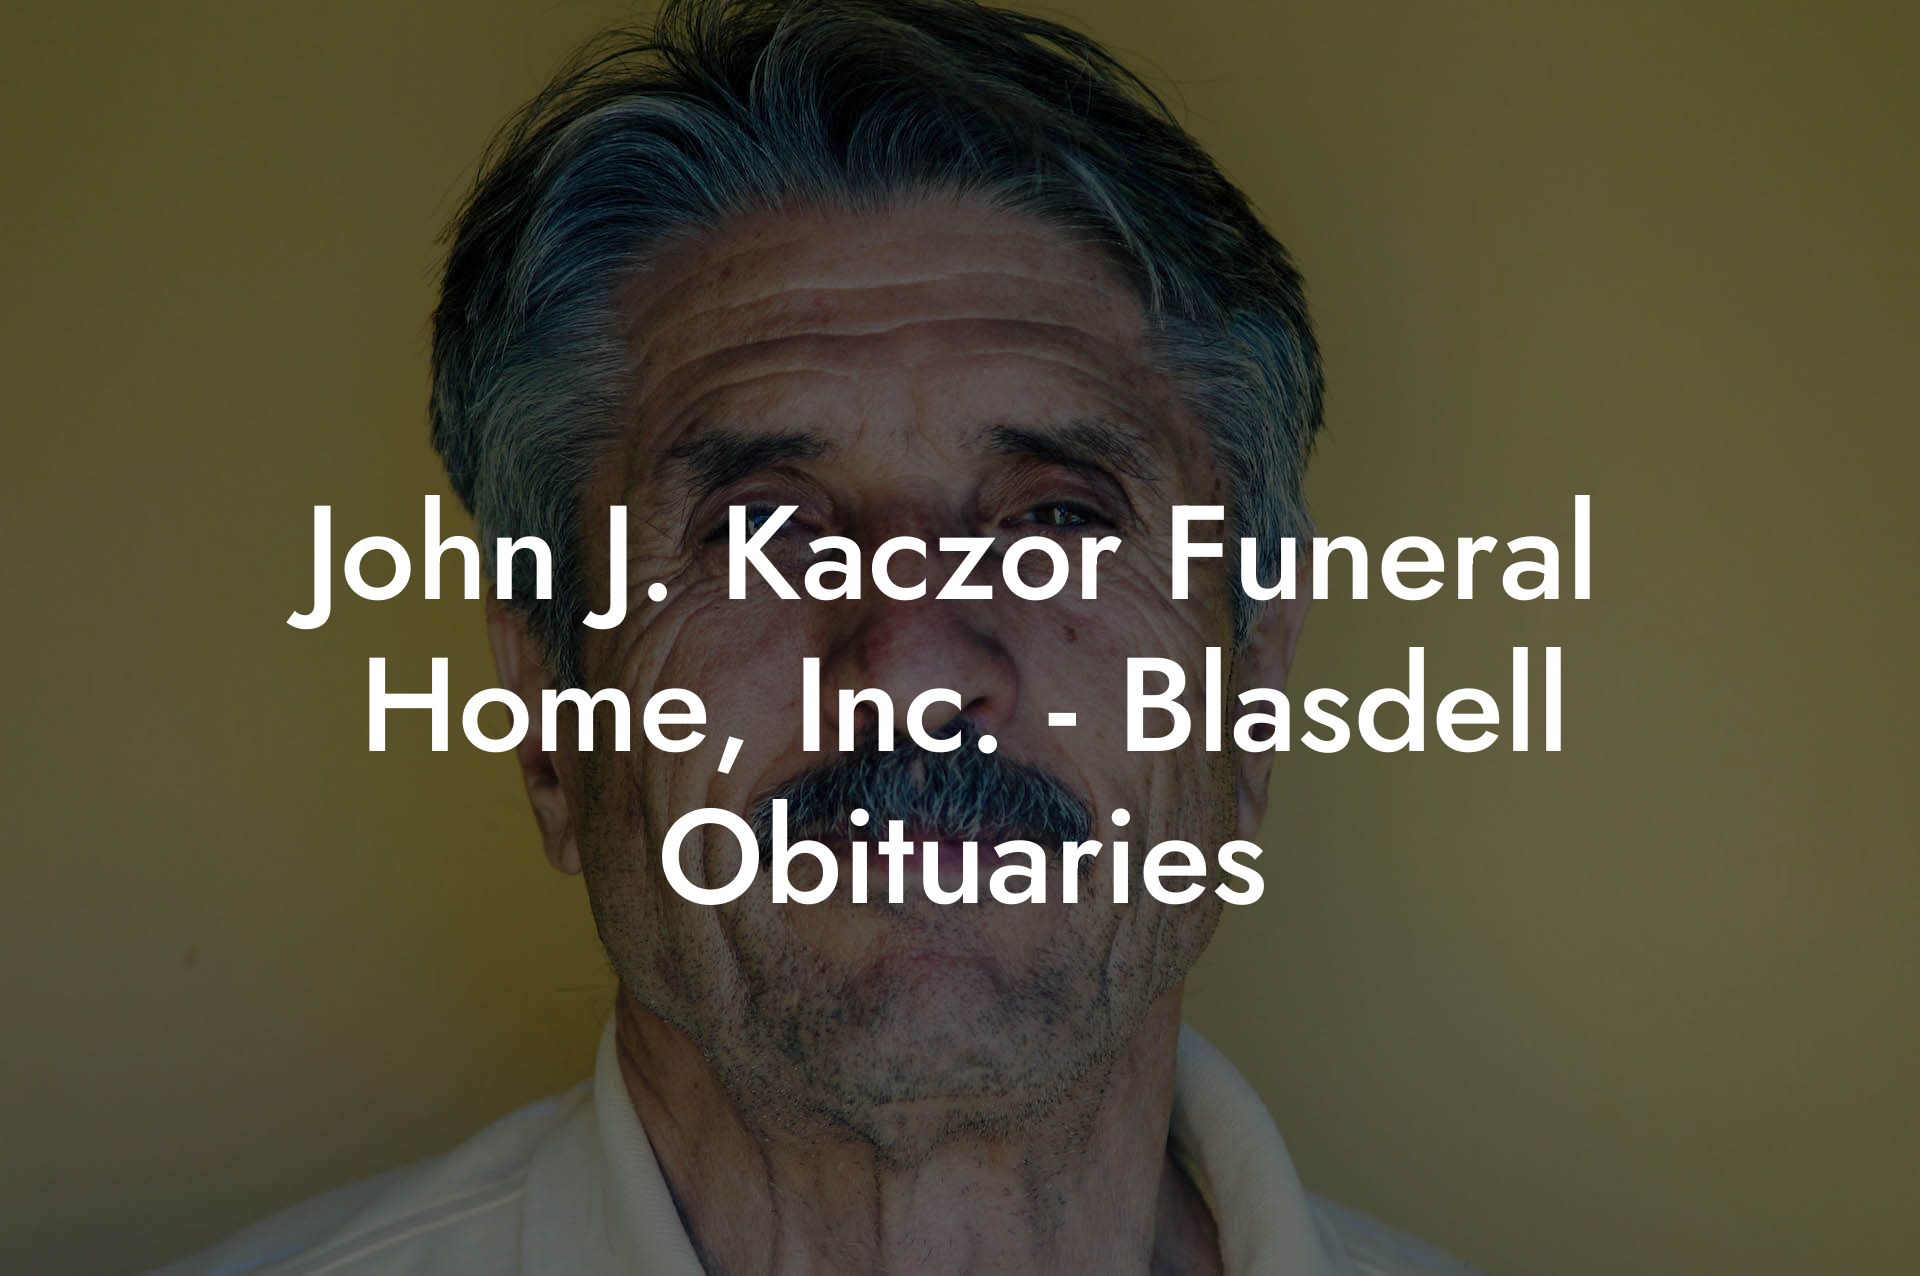 John J. Kaczor Funeral Home, Inc. - Blasdell Obituaries